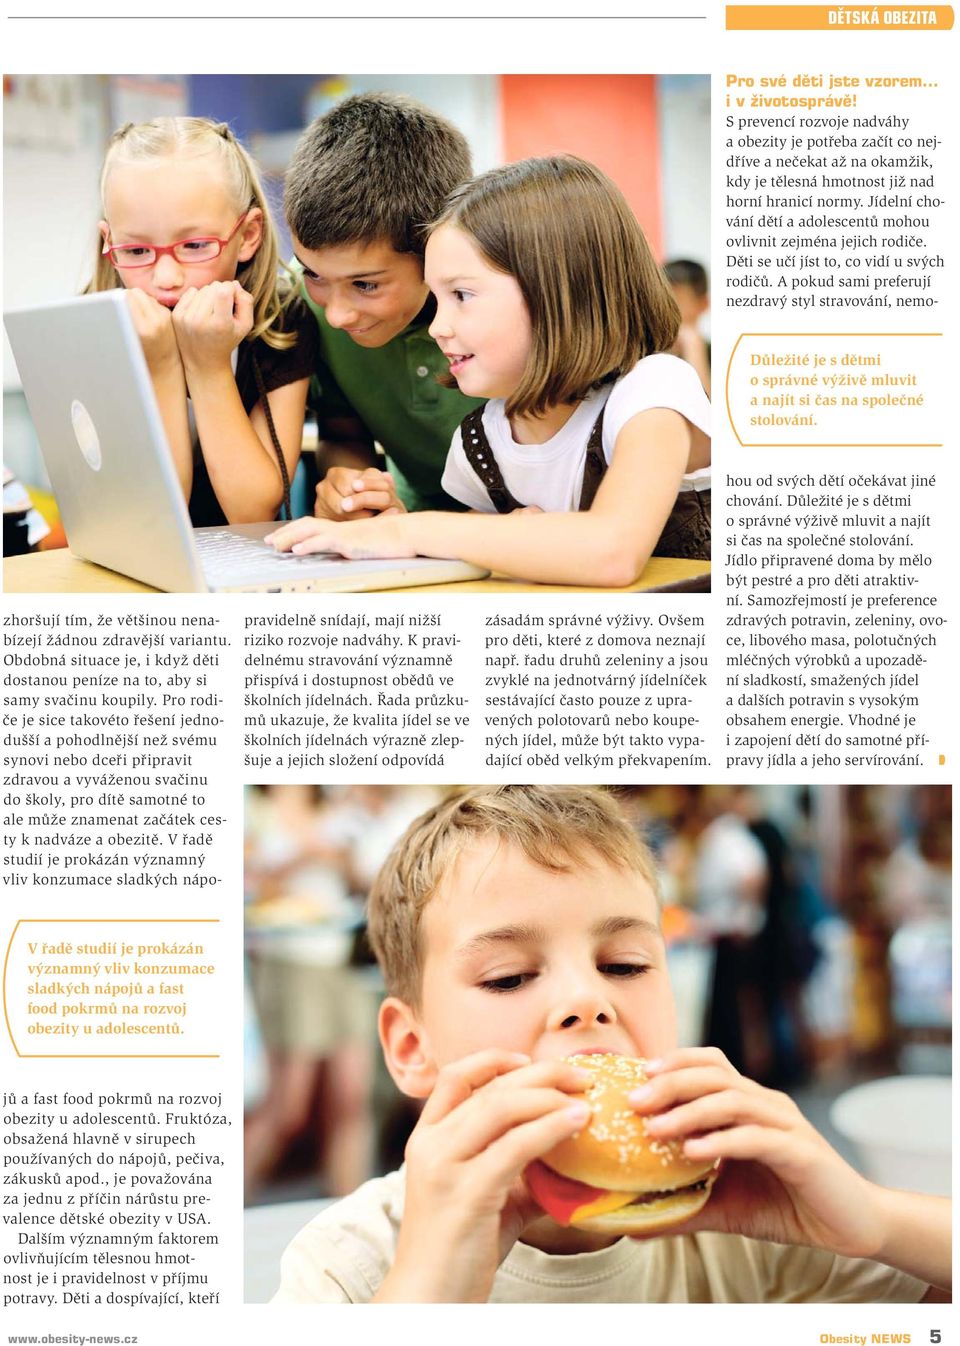 Řada průzkumů ukazuje, že kvalita jídel se ve školních jídelnách výrazně zlepšuje a jejich složení odpovídá zásadám správné výživy. Ovšem pro děti, které z domova neznají např.